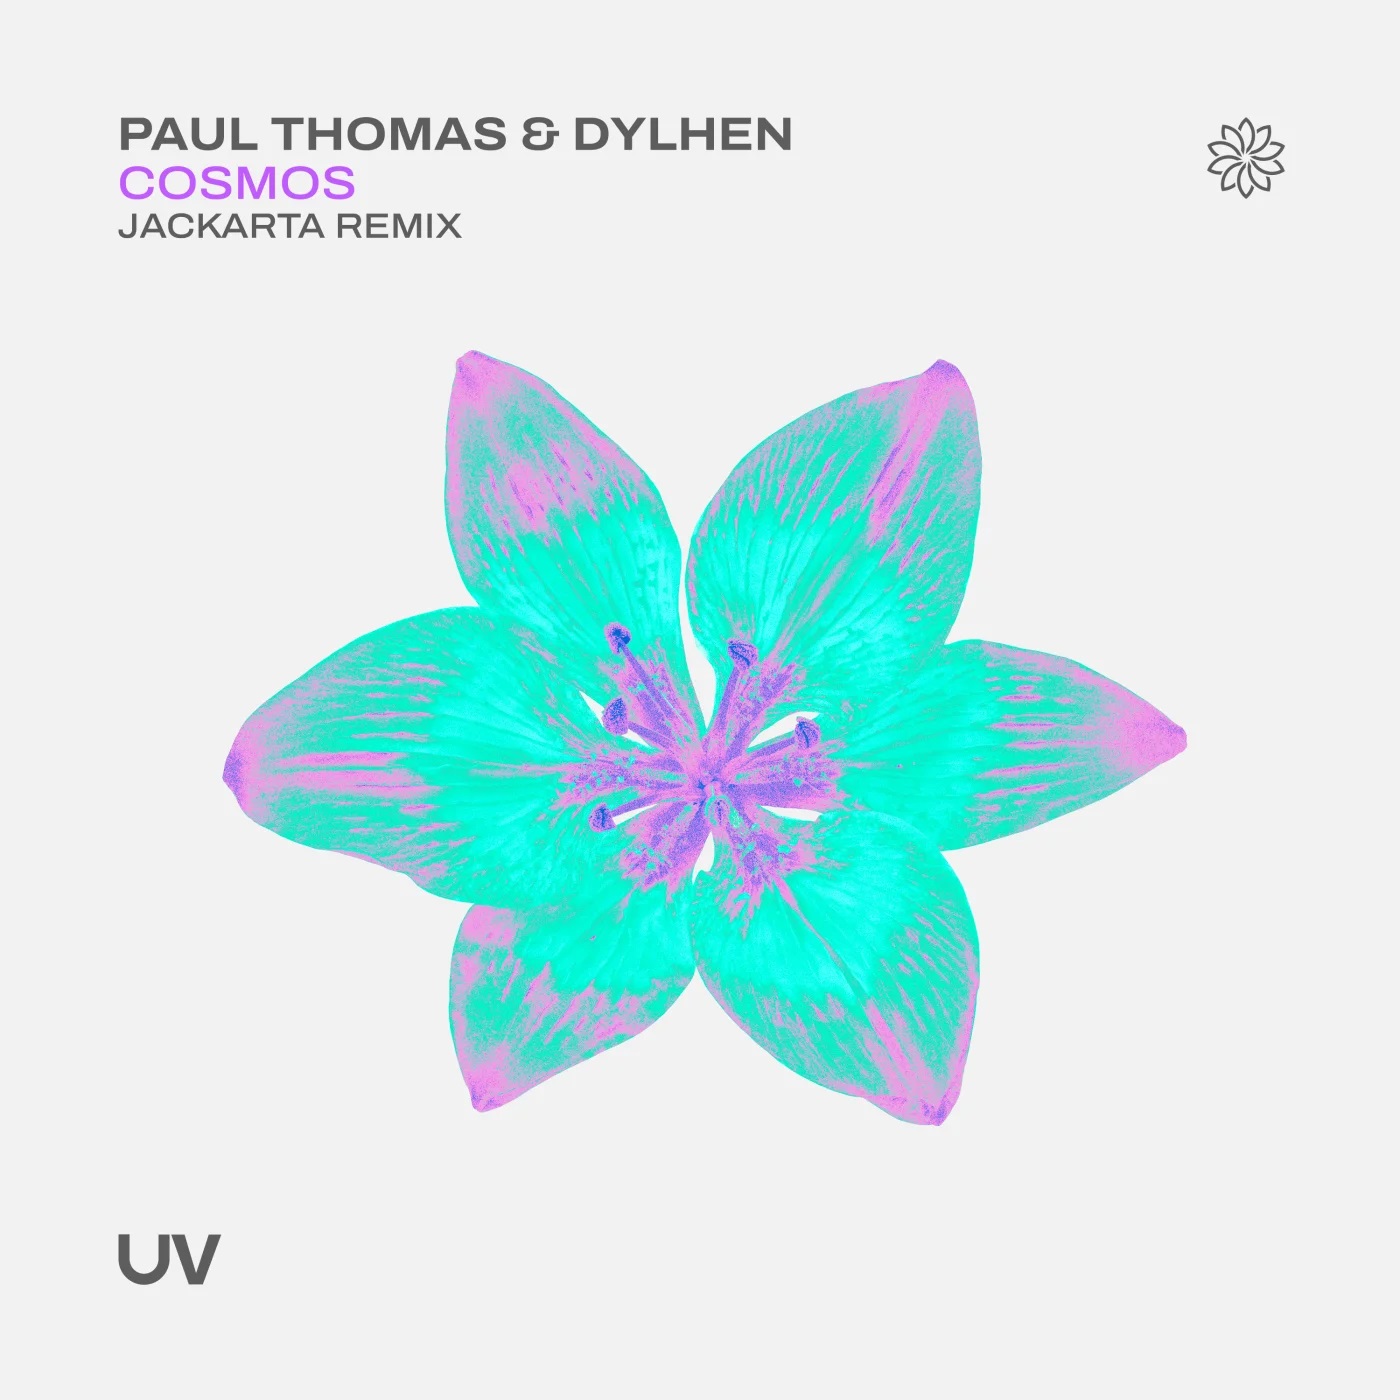 Paul Thomas & Dylhen - Cosmos (Jackarta Extended Remix)